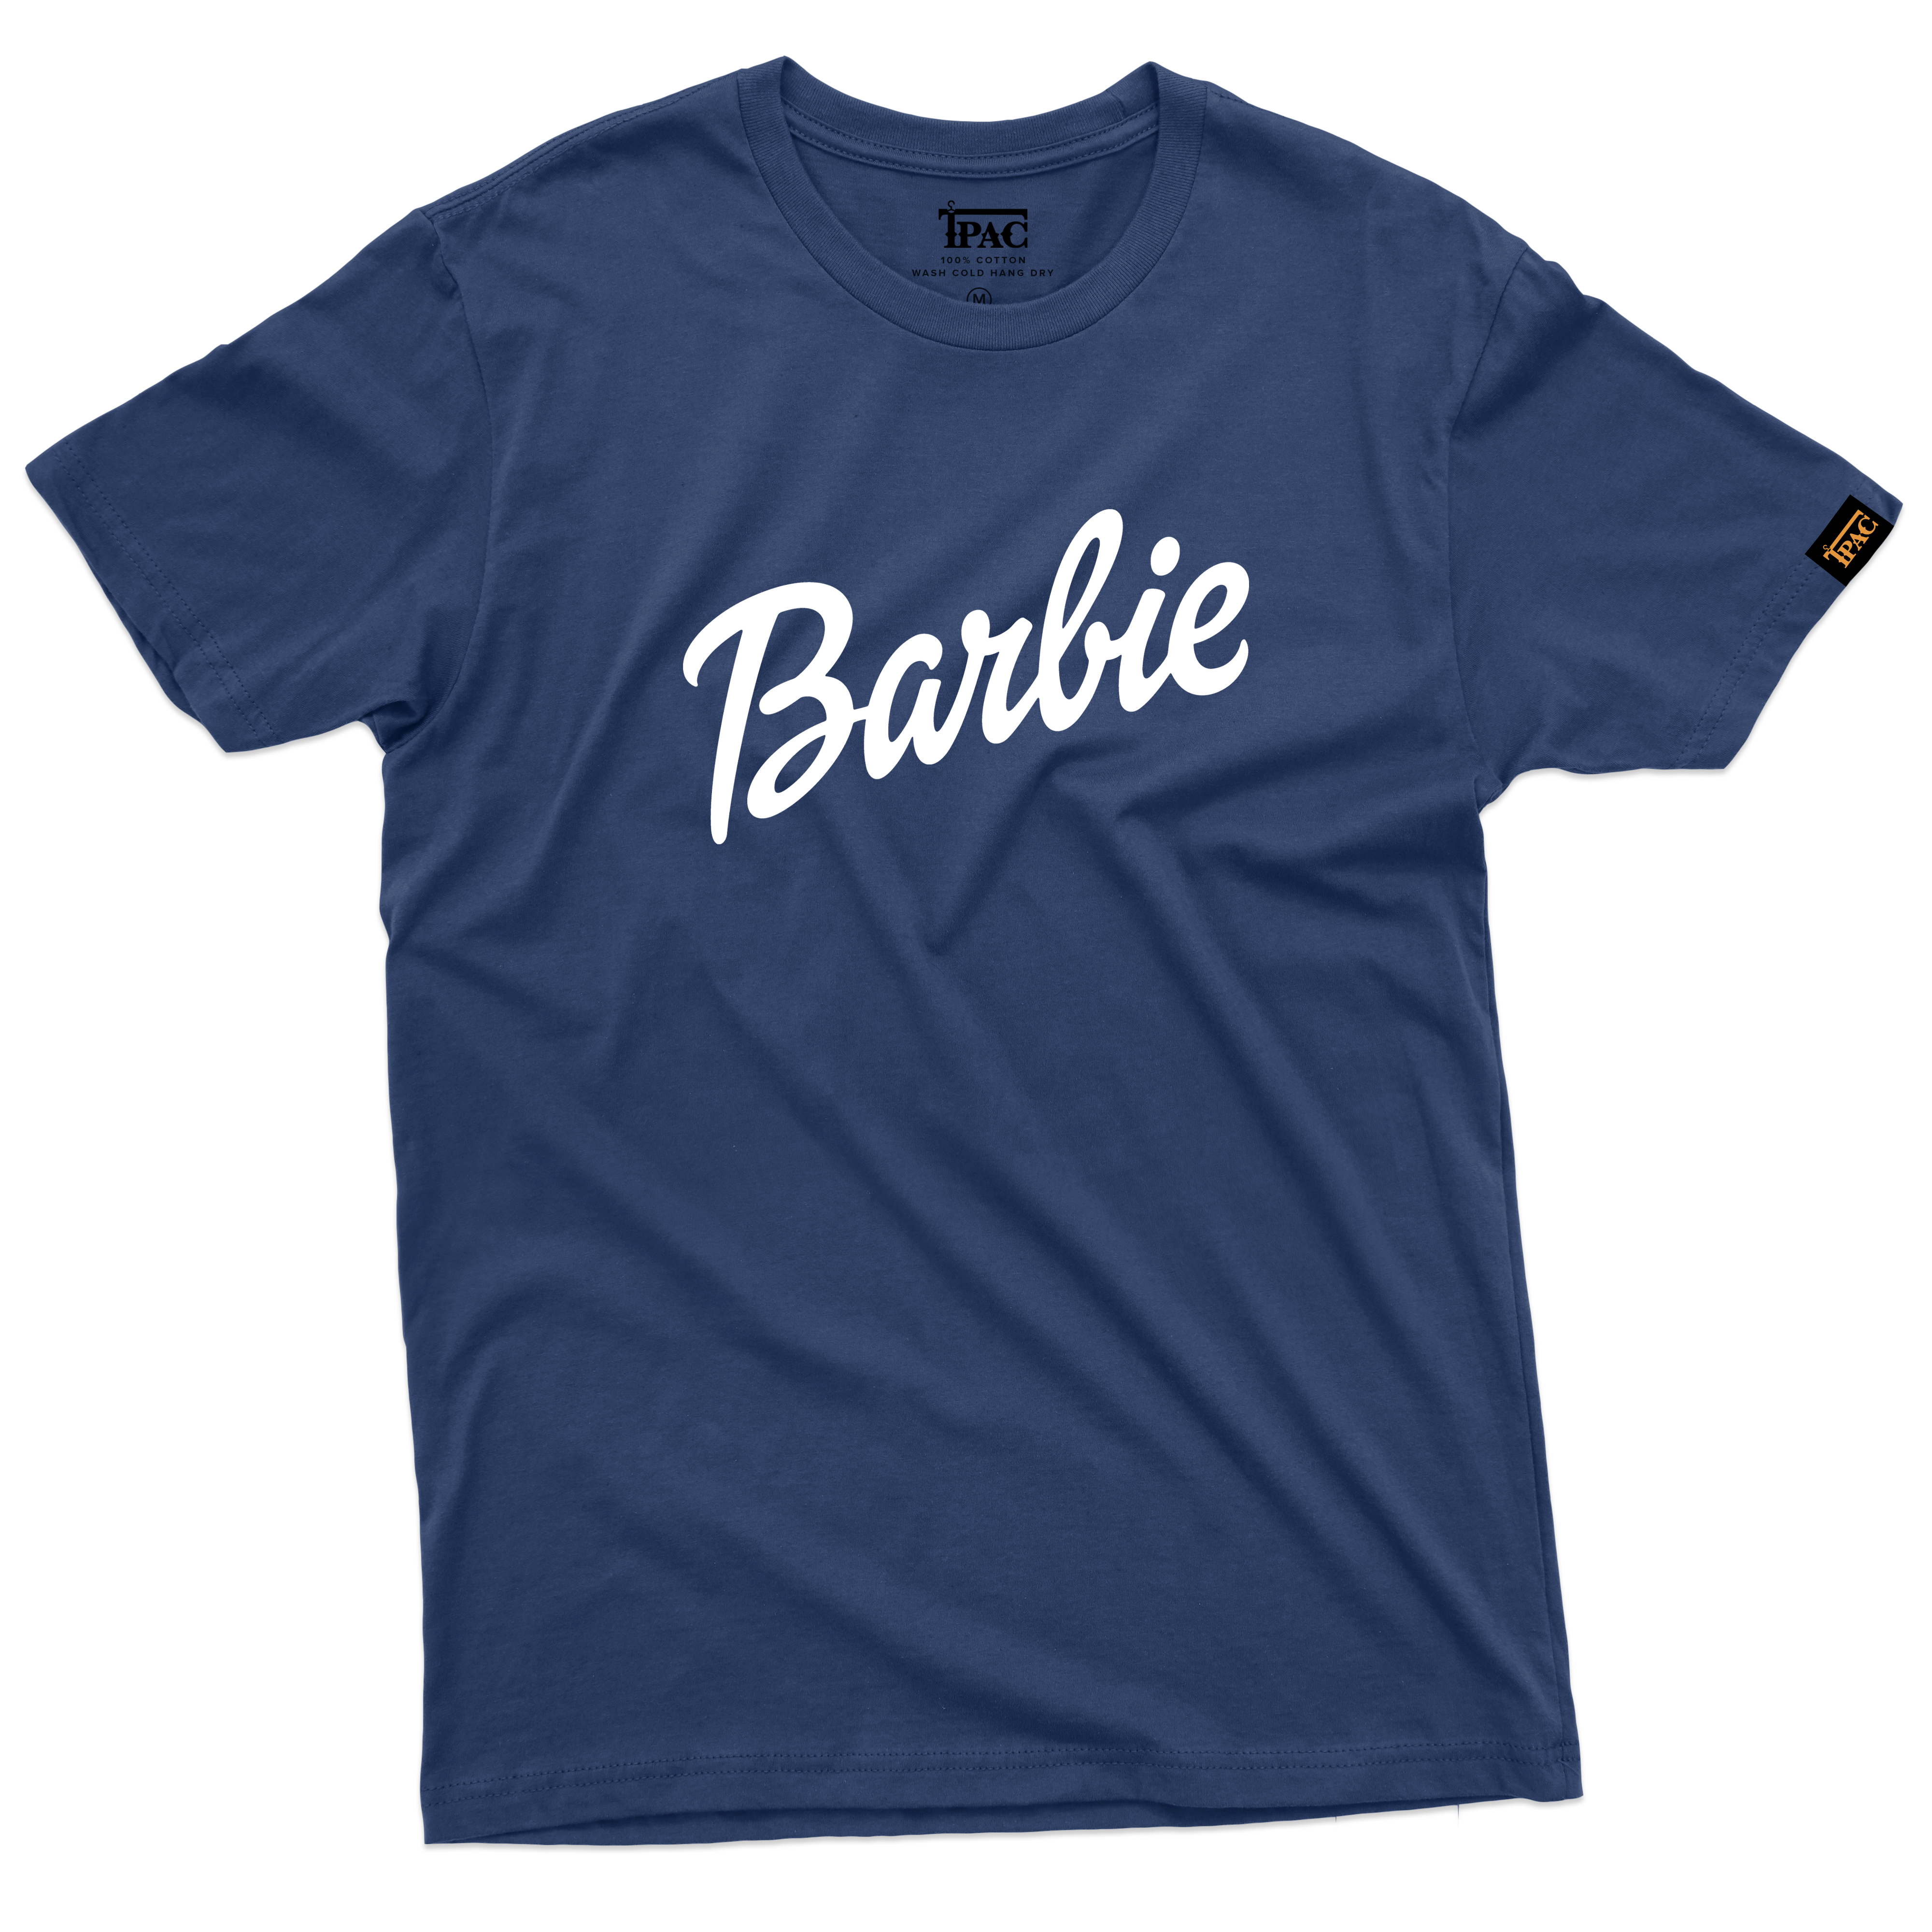 T-Shirt barbenheimer